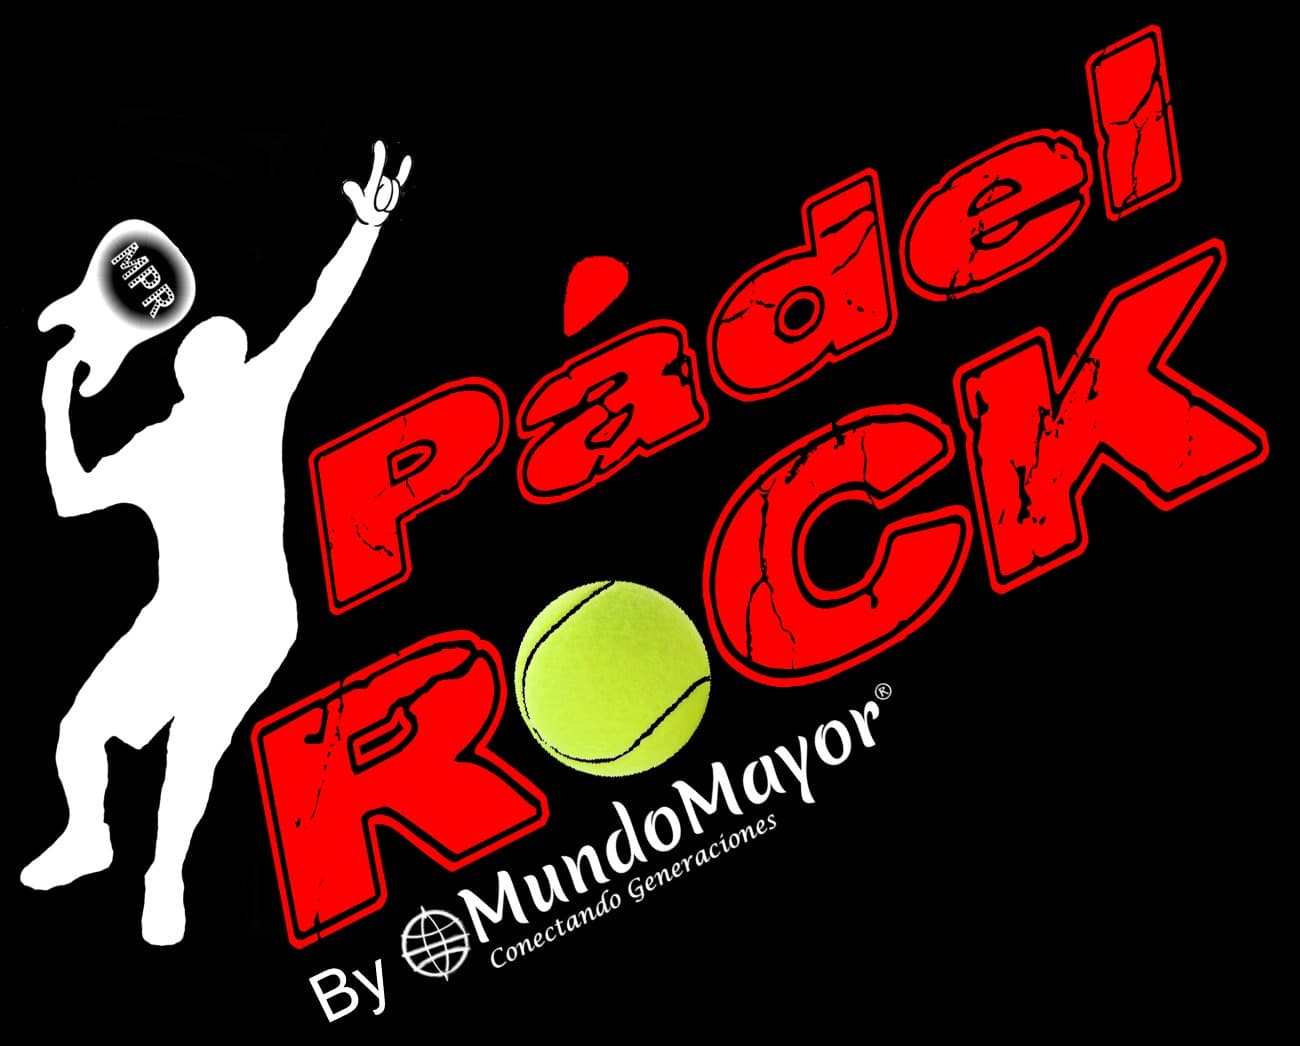 Pádel Rock by MundoMayor